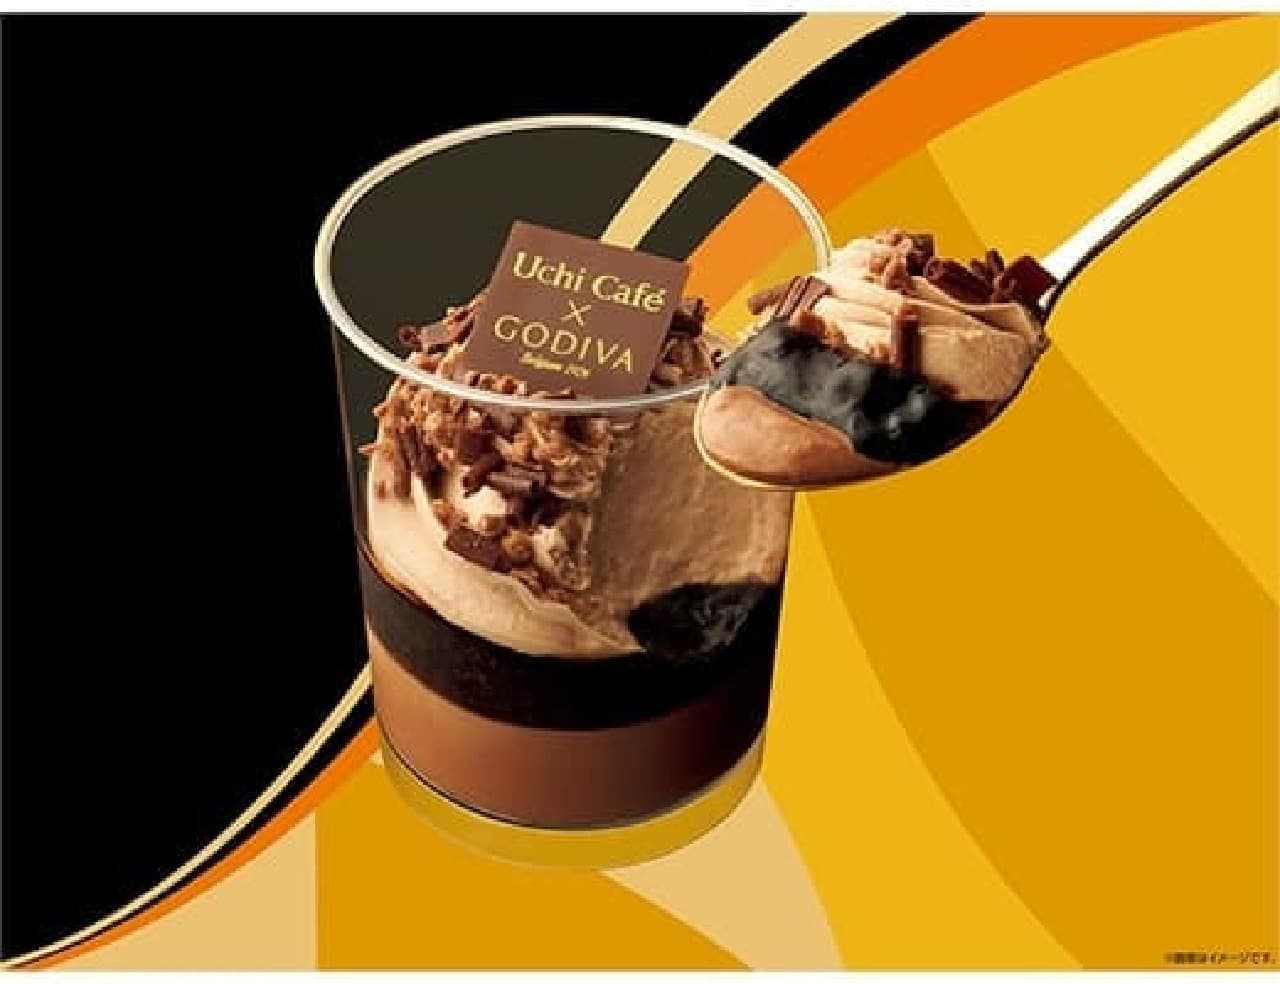 LAWSON "Uchi Cafe×GODIVA Chocolat & Fromage Mousse